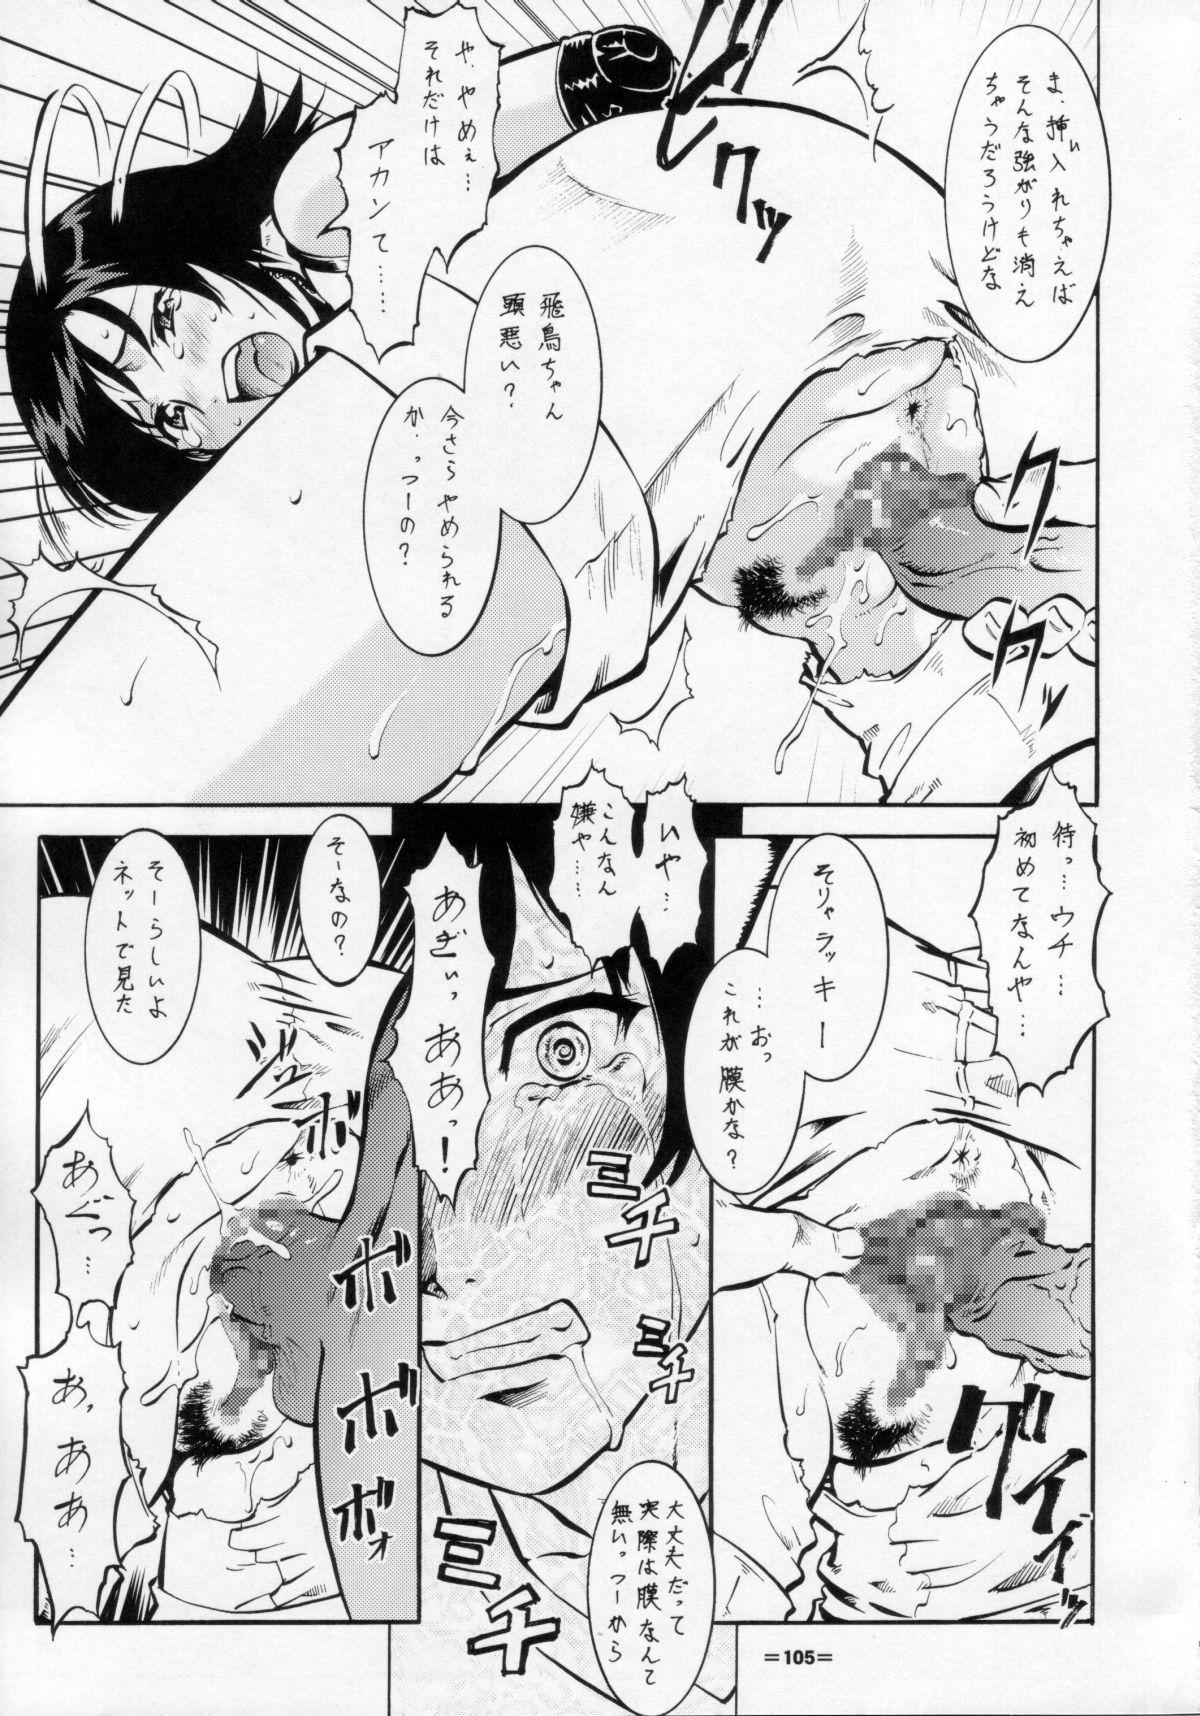 Umeta Manga Shuu 11 -nin iru! 103